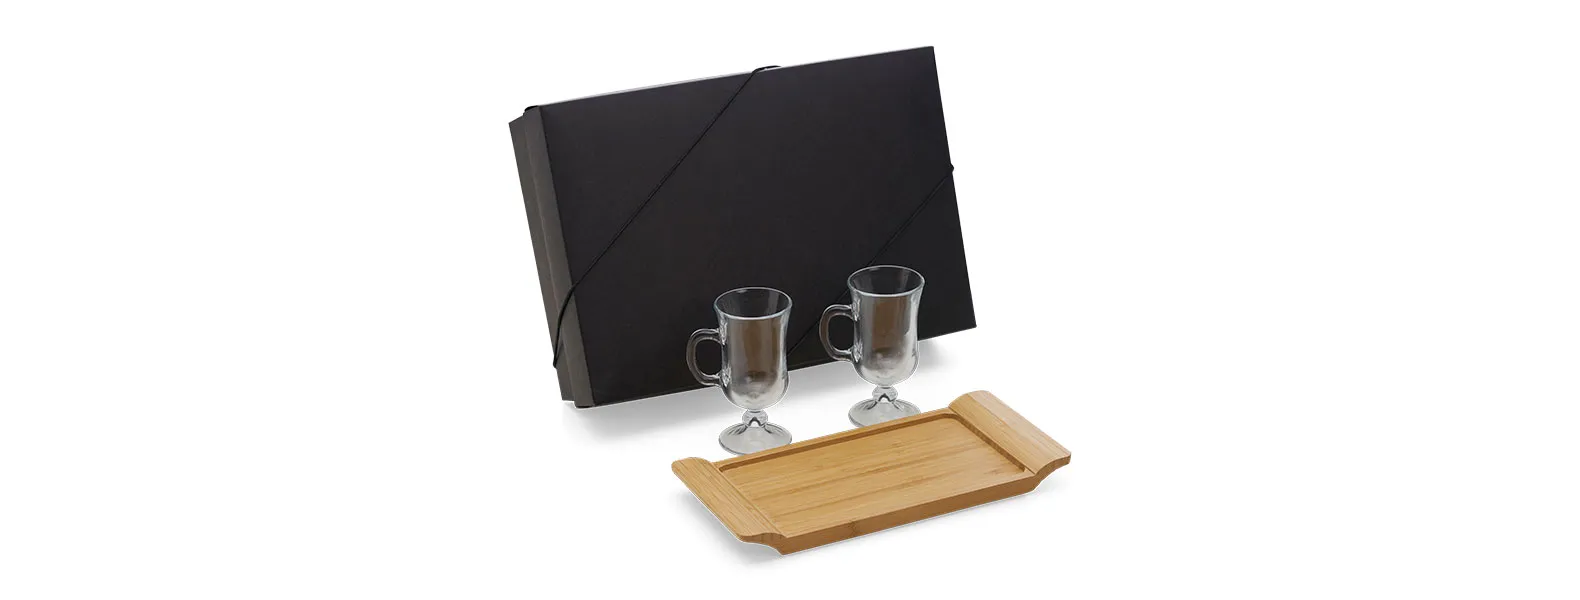 Kit para cafézinho; Conta com bandeja em bambu; Duas canecas em vidro 130ml cada. Estão perfeitamente acomodados em uma caixa para presentear.